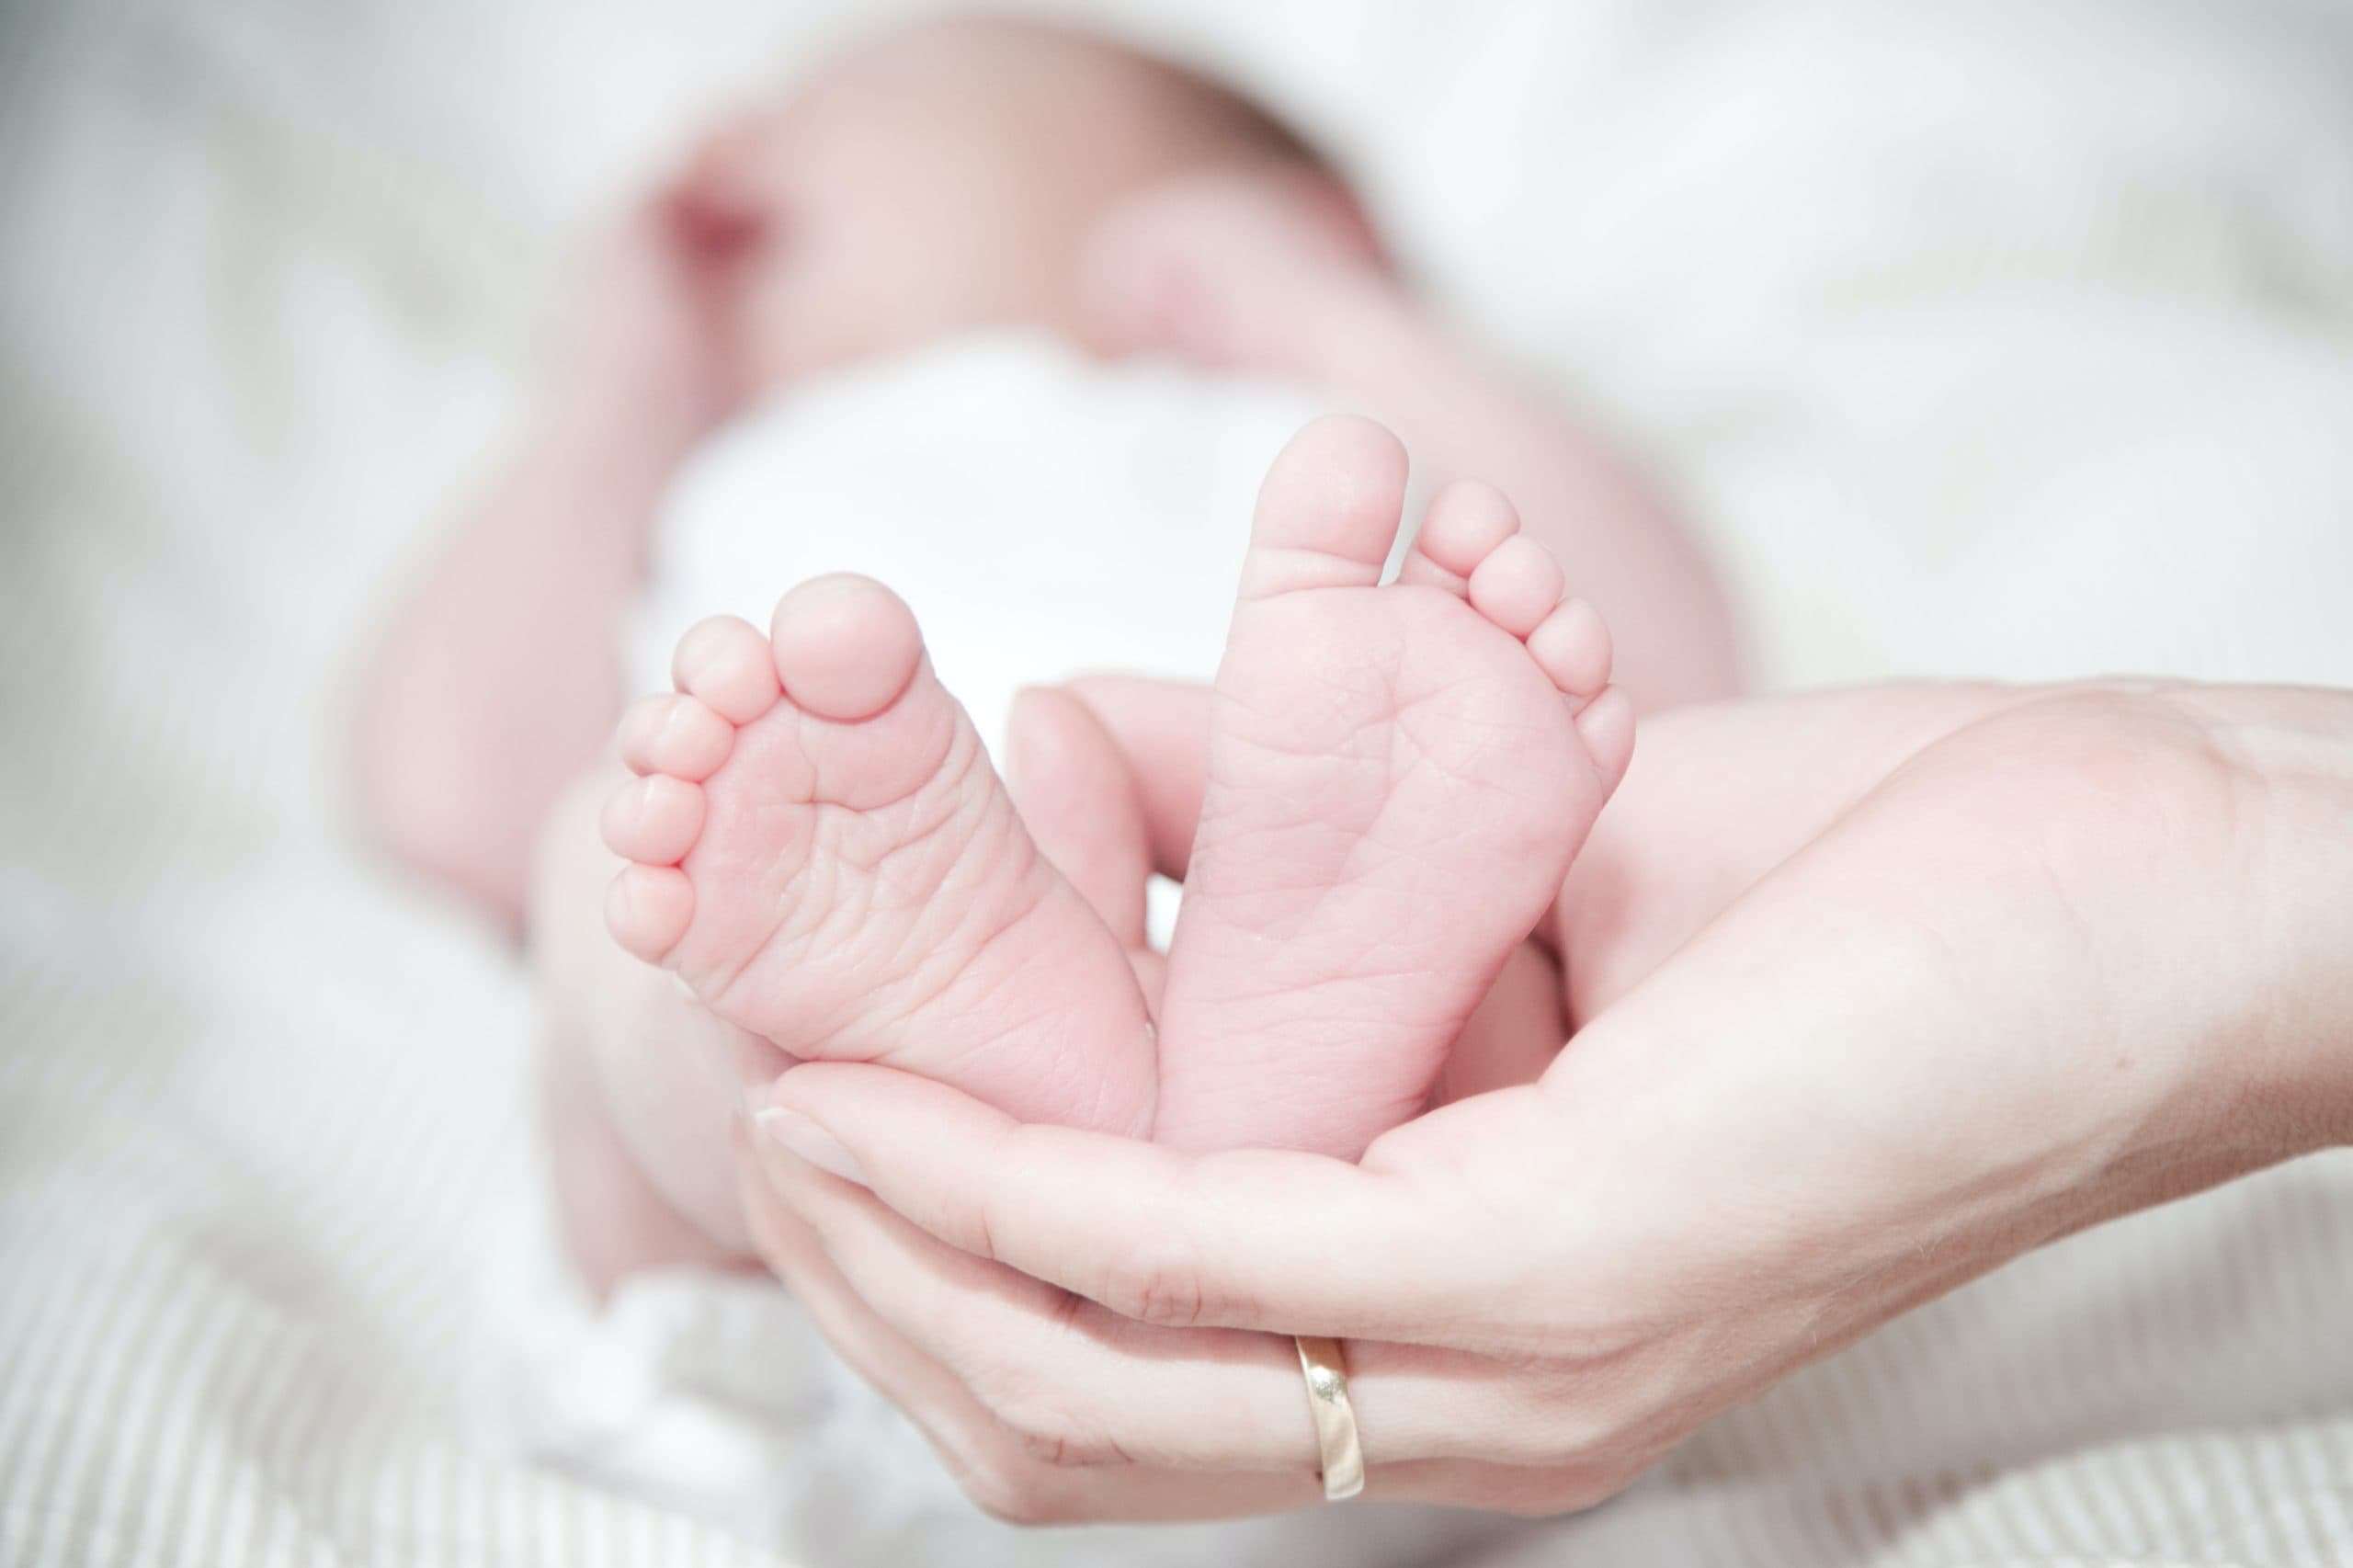 Brachial Plexus Birth Injury Lawsuit: When to Sue